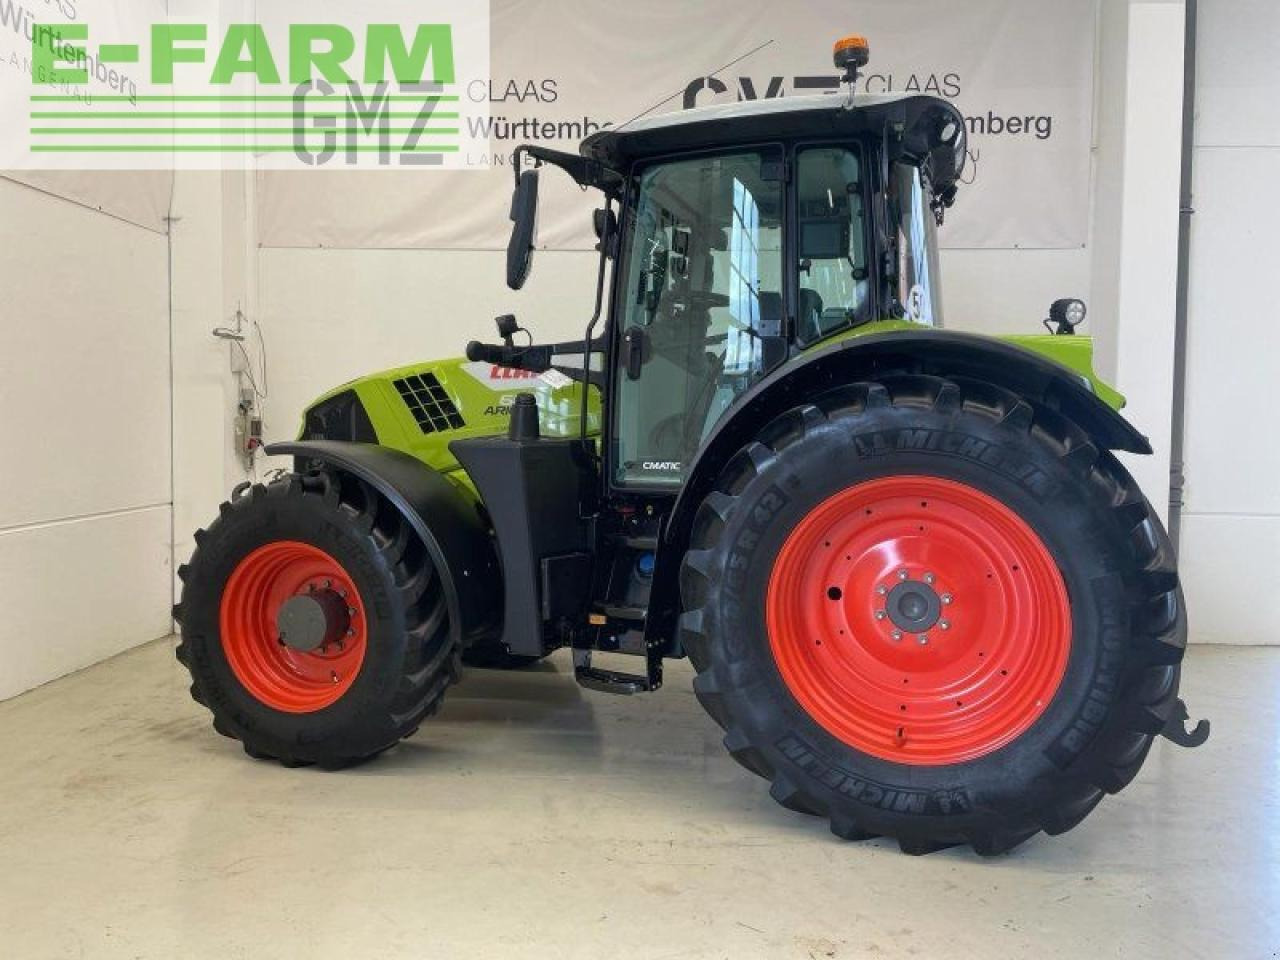 Farm tractor CLAAS arion 660 cmatic cebis